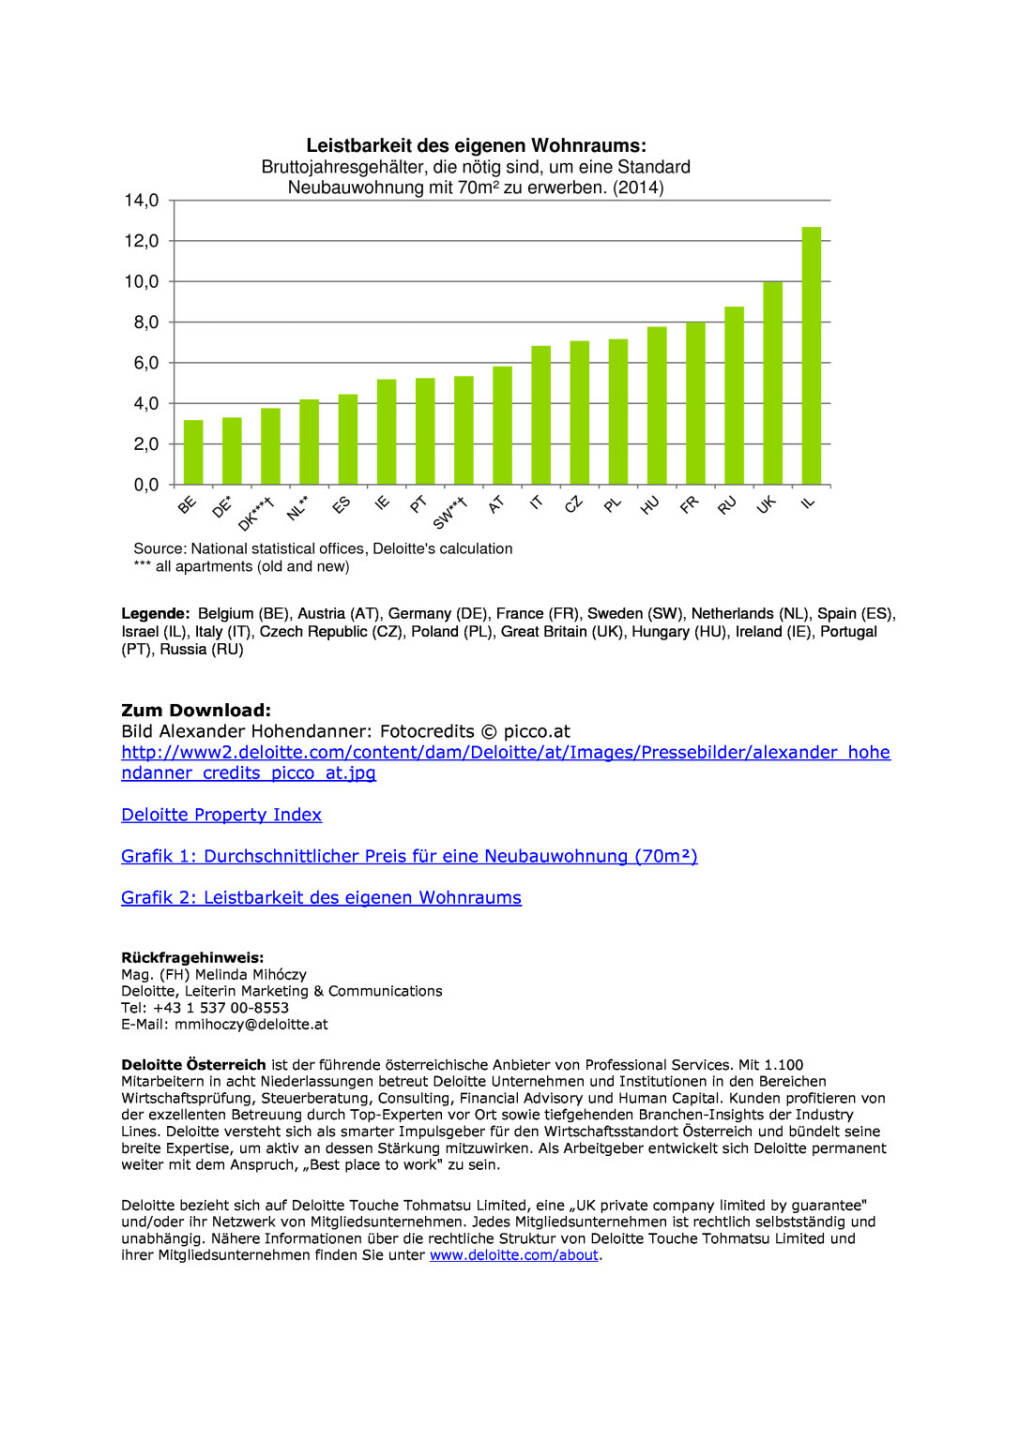 Österreich baute 2014 EU-weit die meisten Wohnungen (Deloitte), Seite 3/3, komplettes Dokument unter http://boerse-social.com/static/uploads/file_211_deloitte.pdf